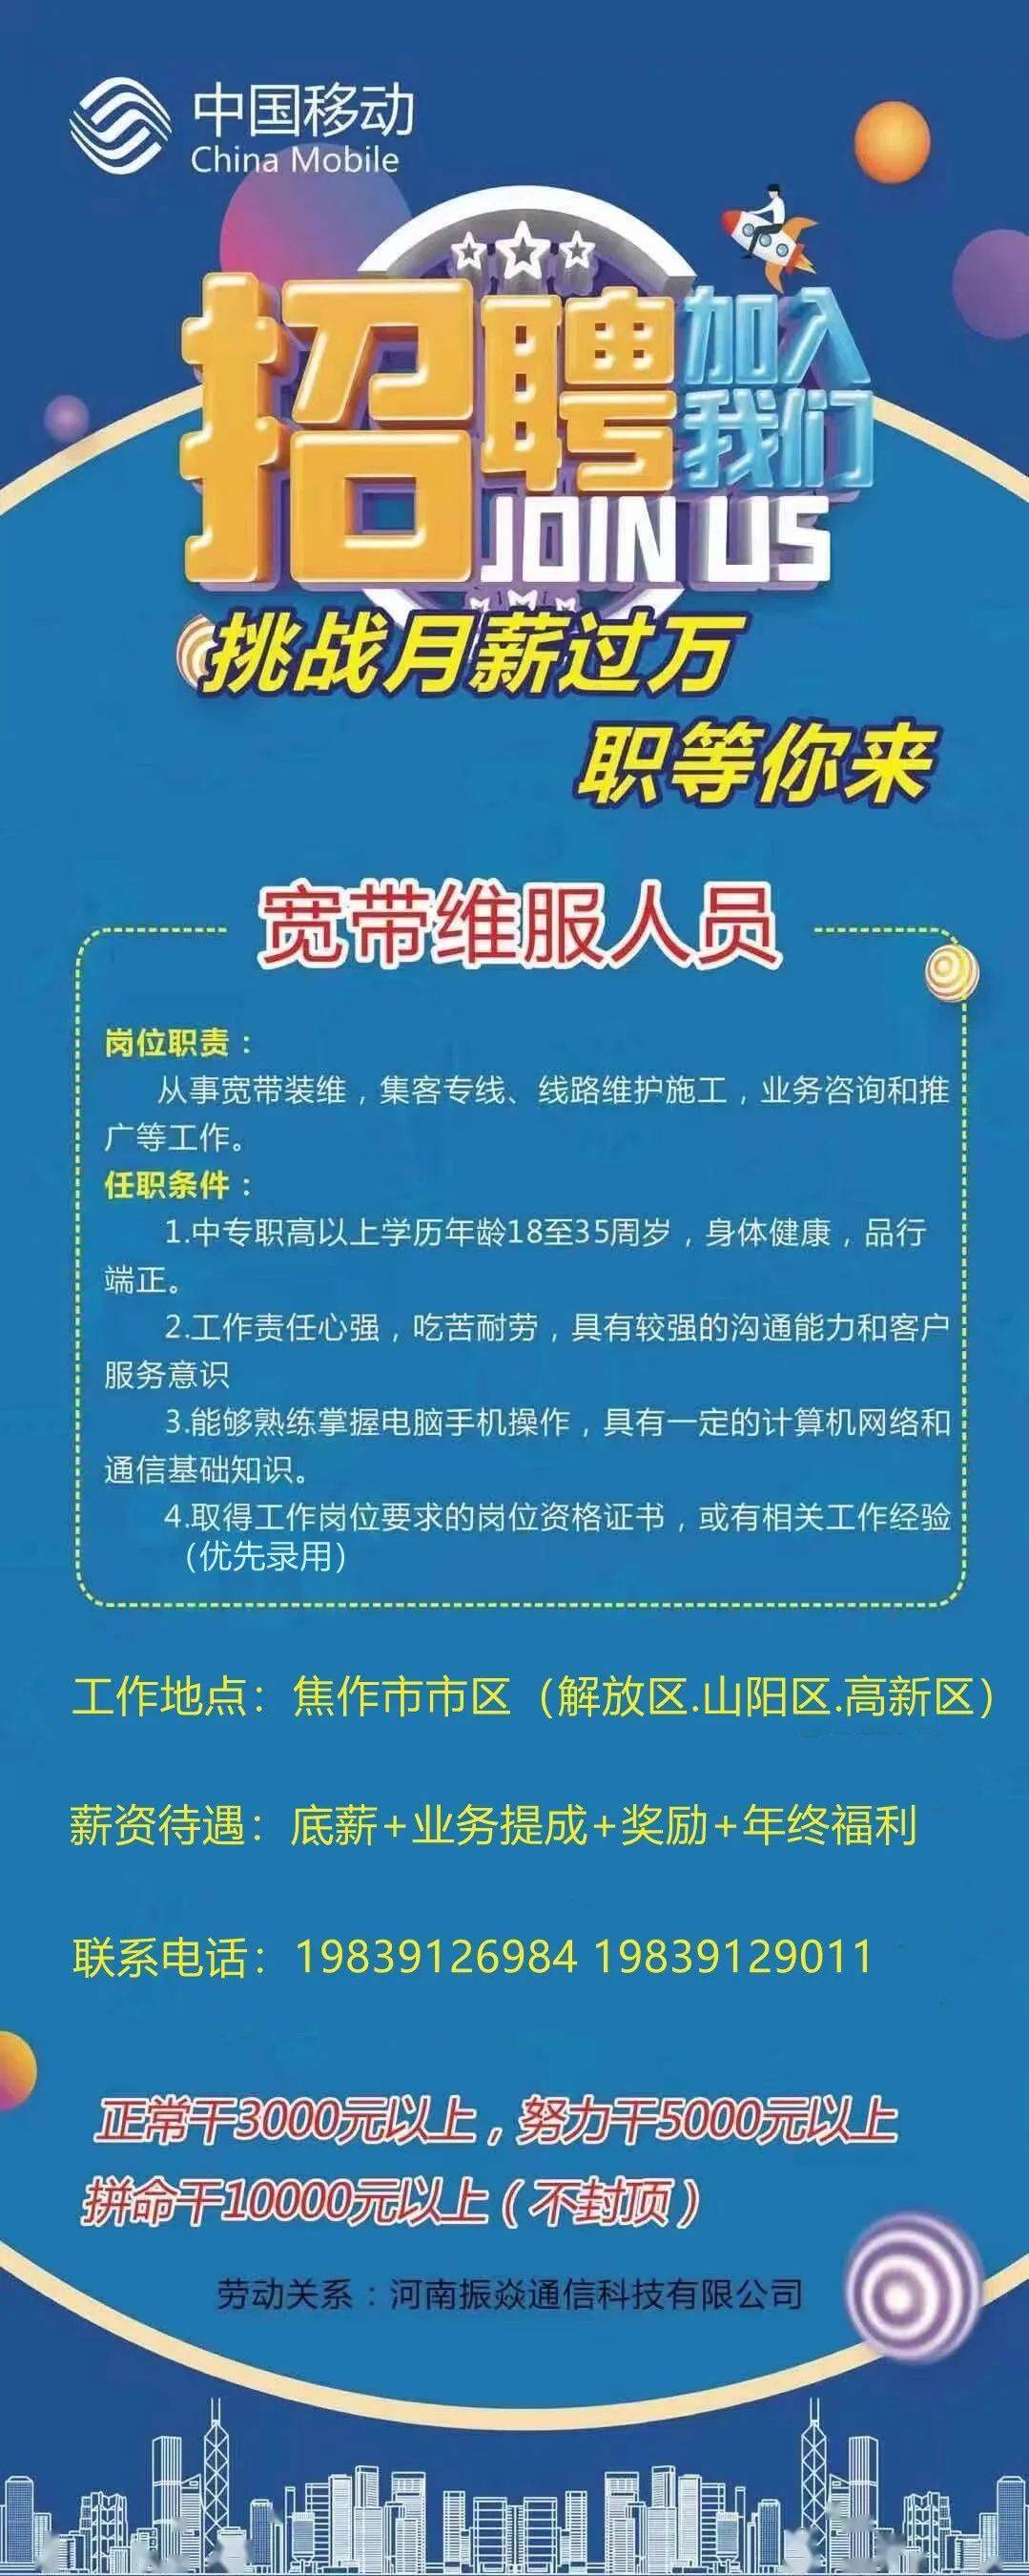 振焱通信招聘中国移动宽带维护人员